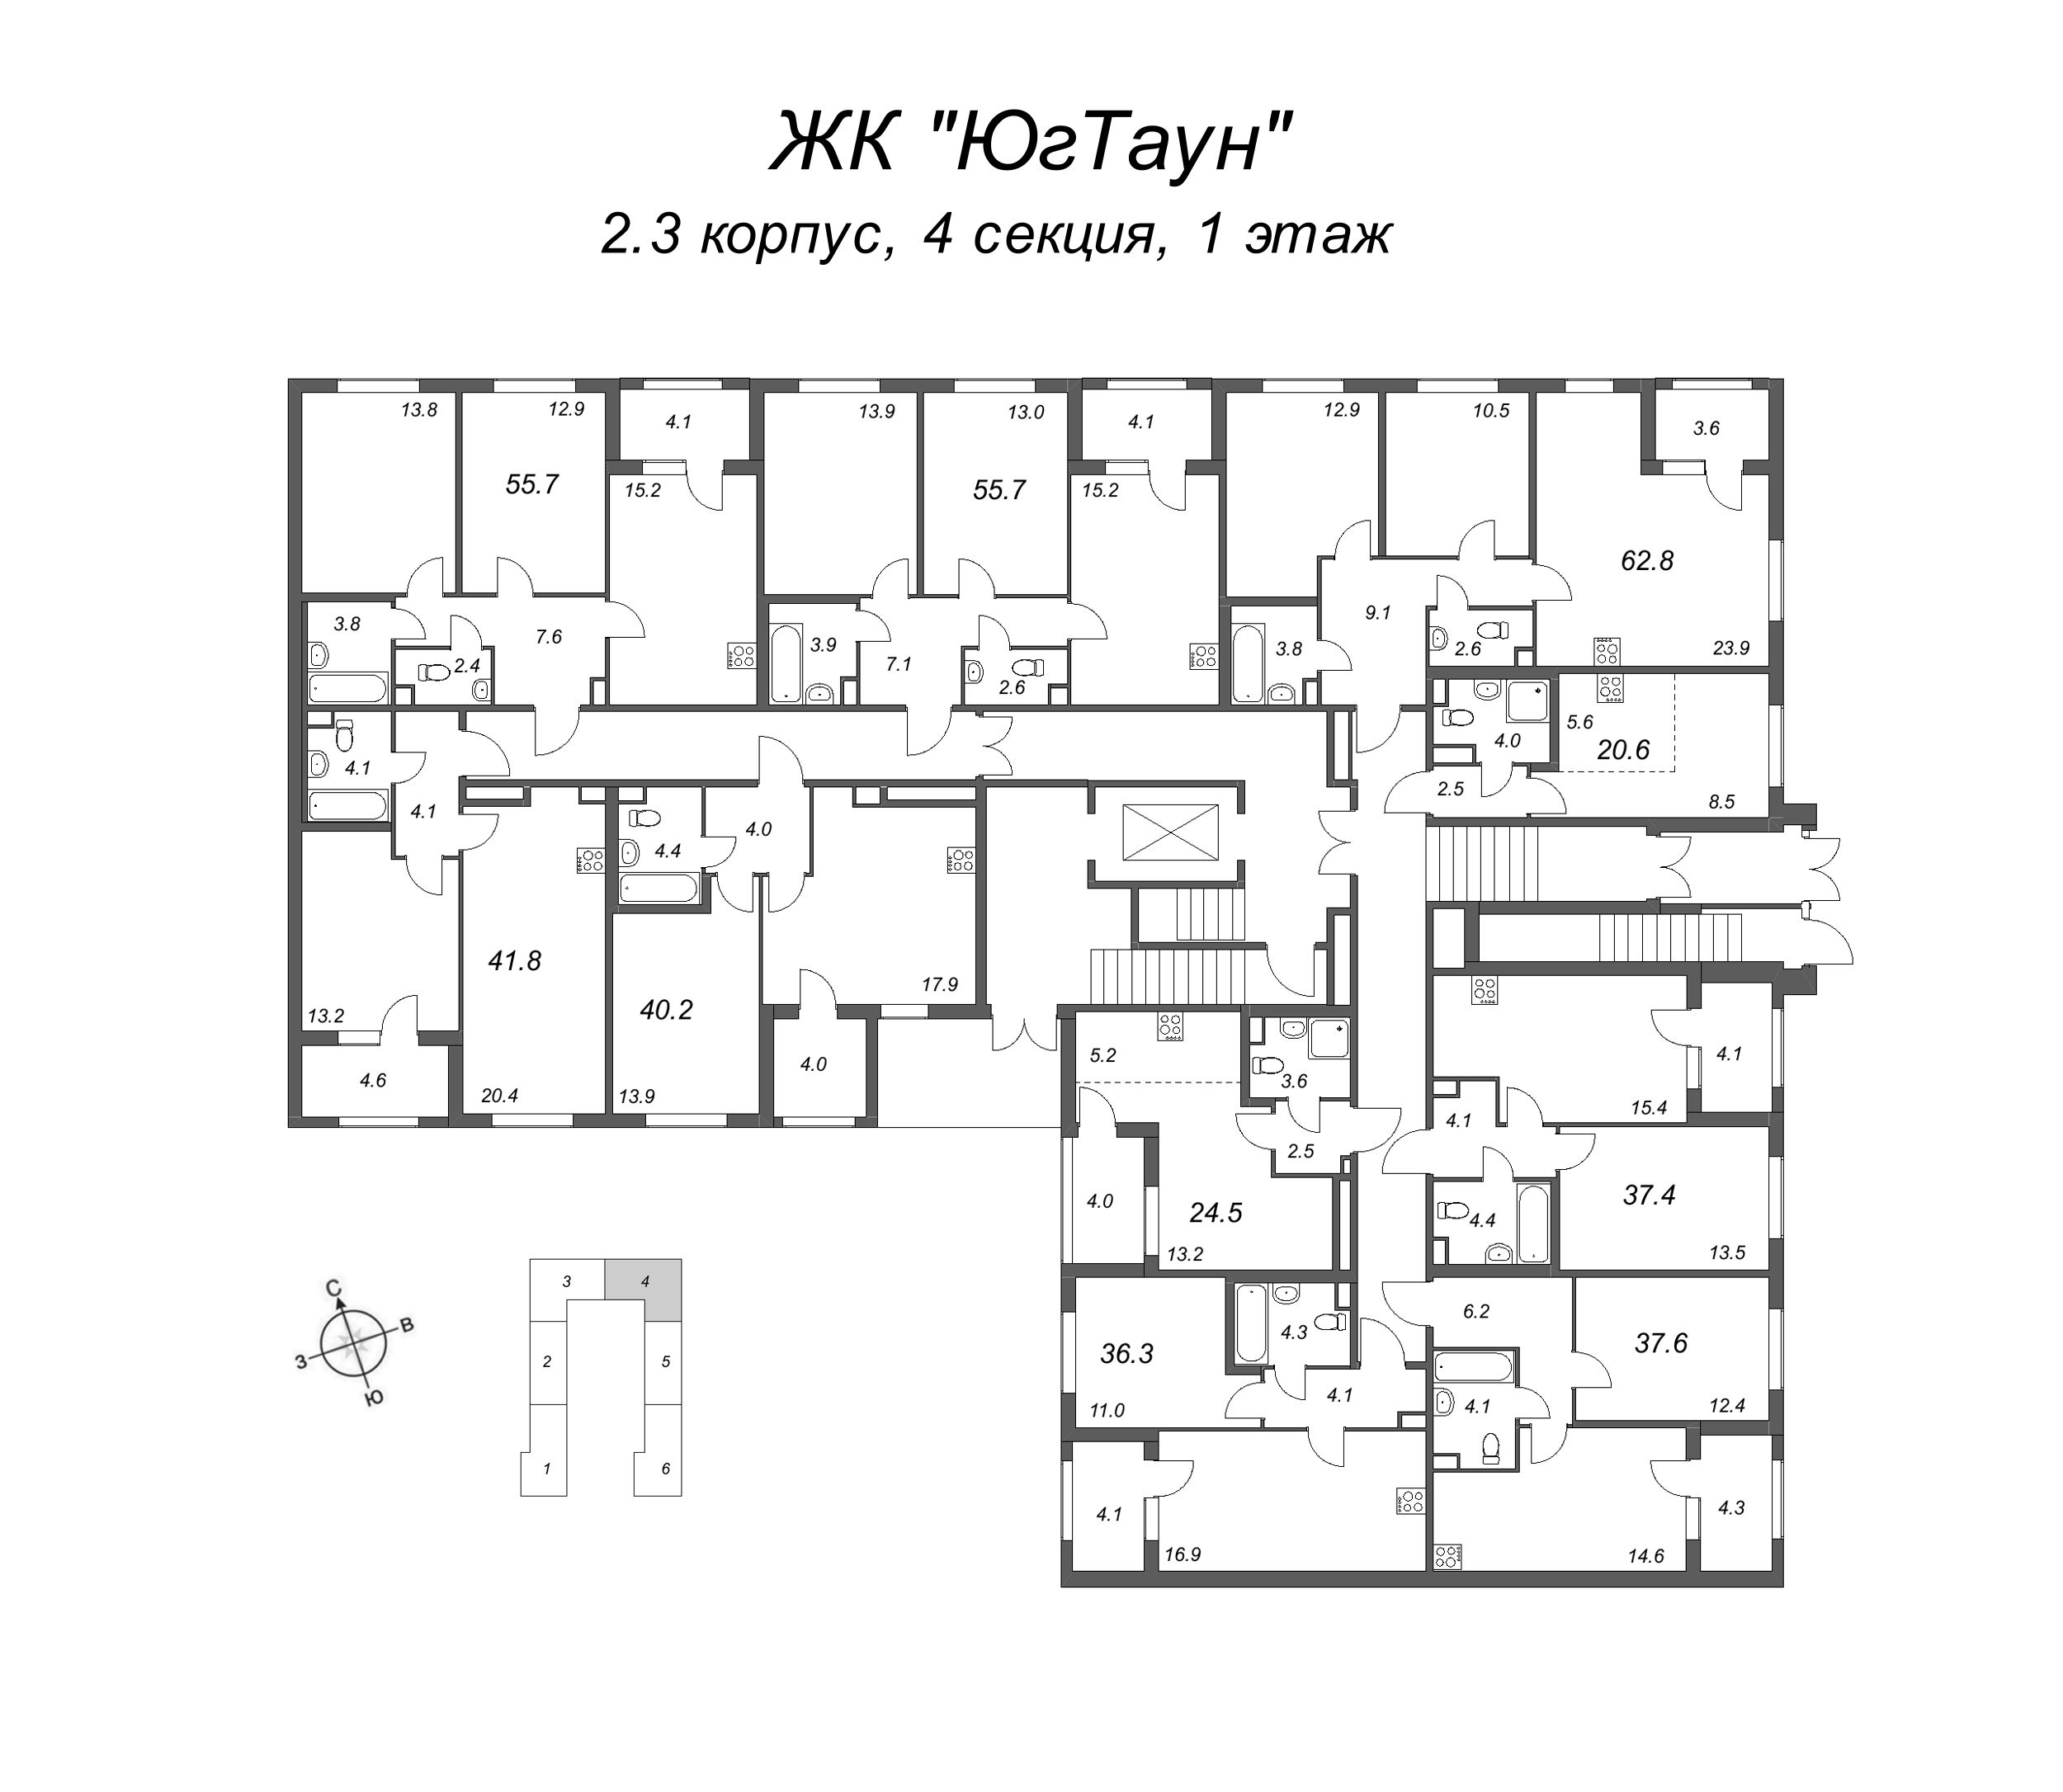 1-комнатная квартира, 37.6 м² в ЖК "ЮгТаун" - планировка этажа